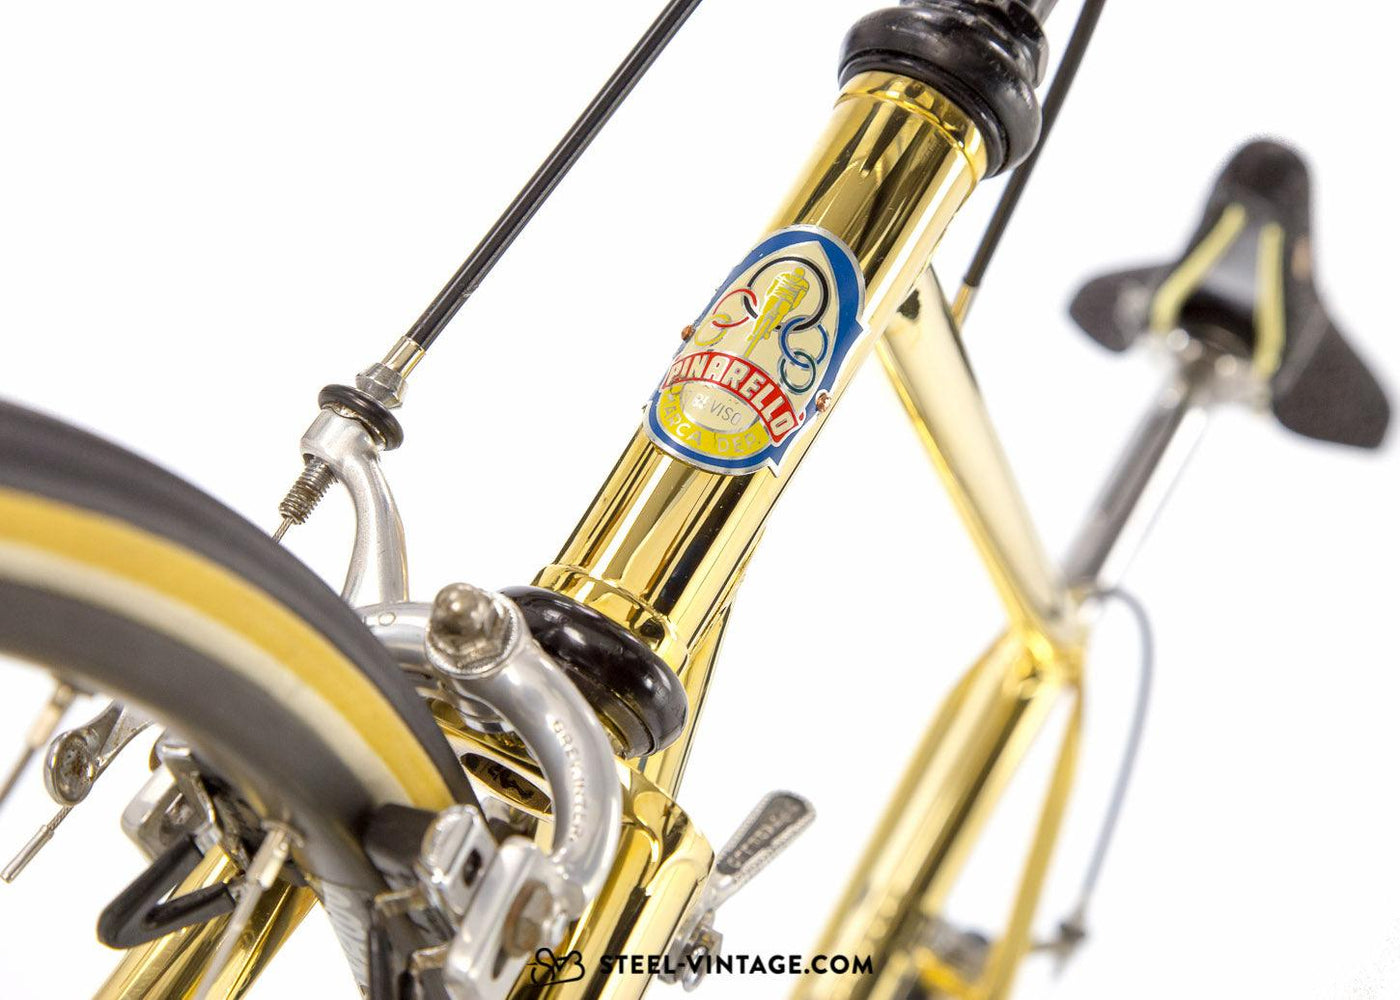 Pinarello Prestige Oro Rare Road Bike 1979 - Steel Vintage Bikes